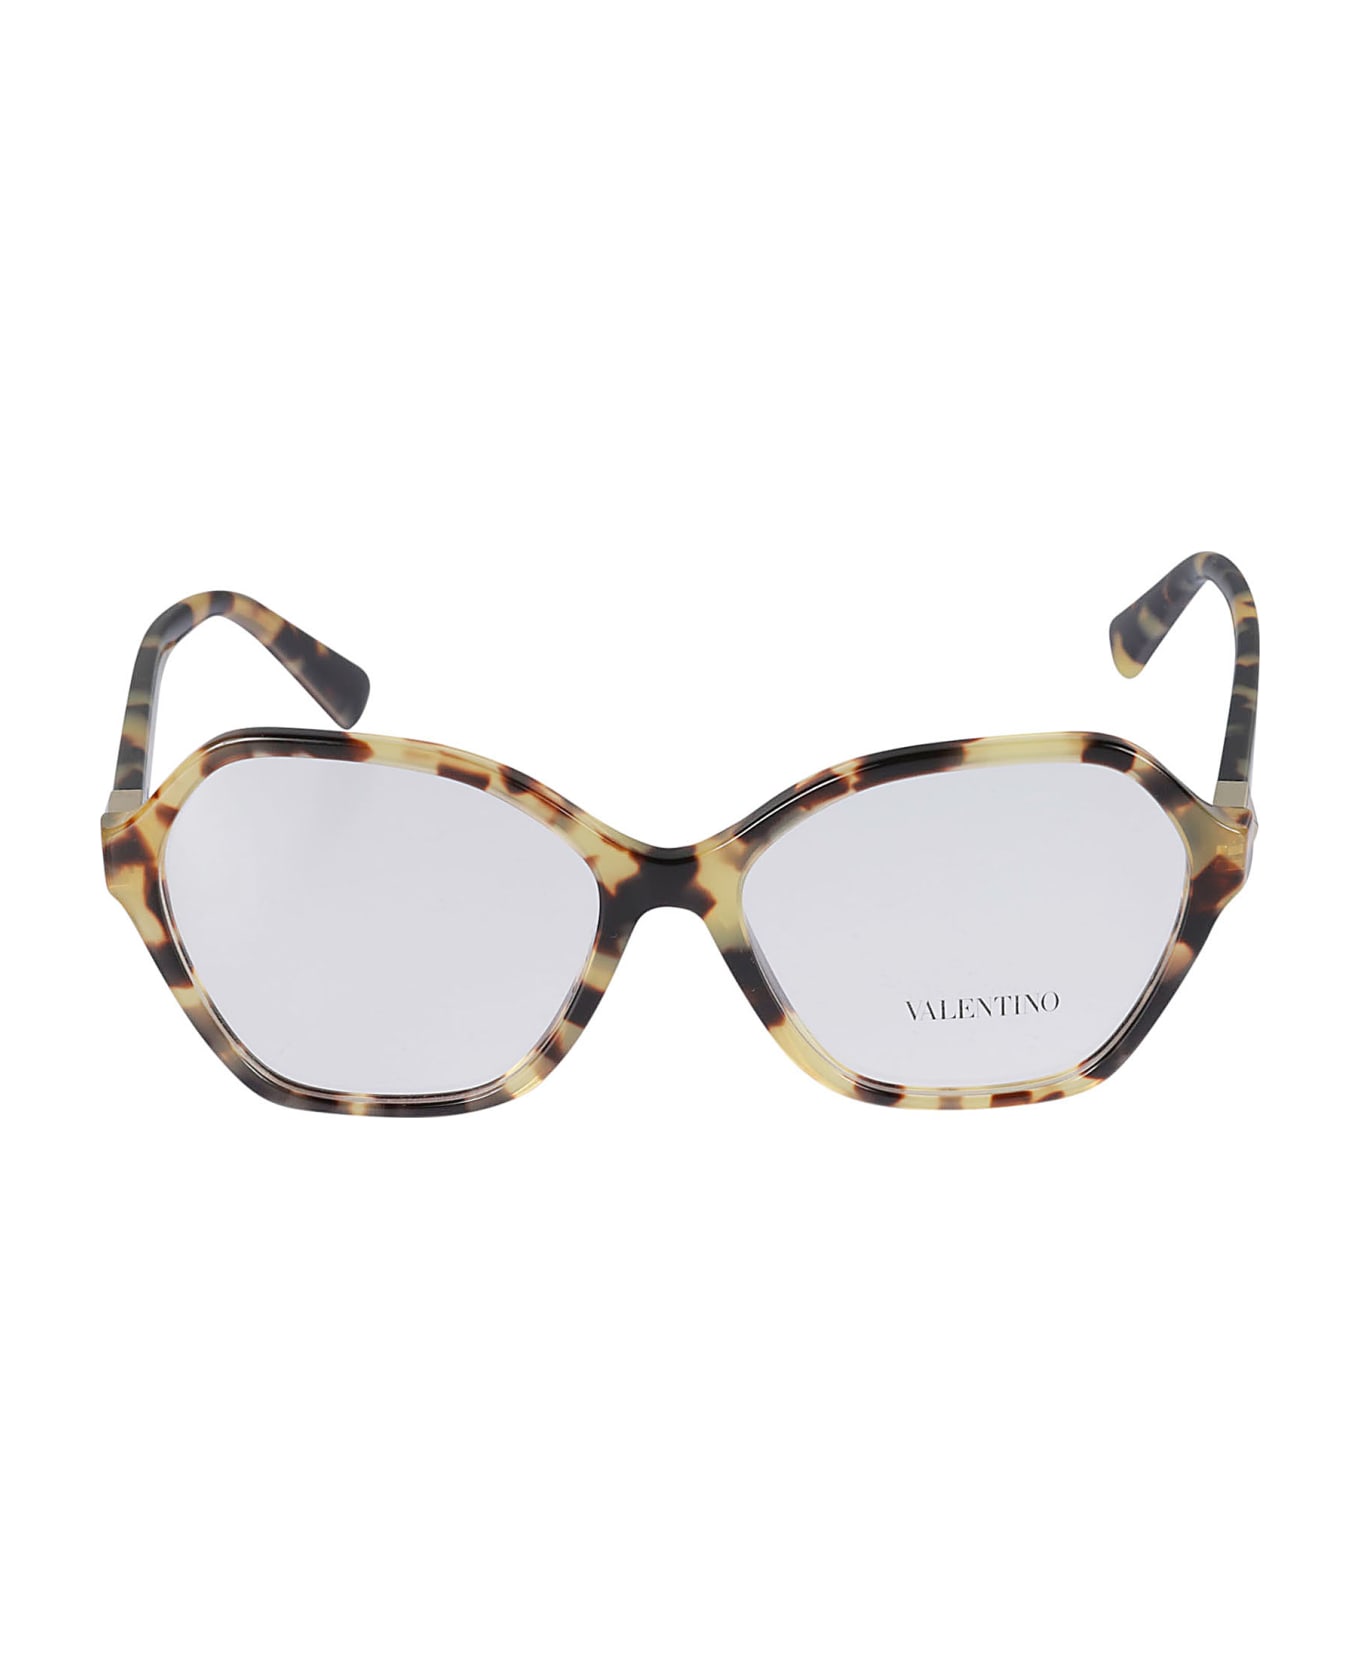 Valentino Eyewear Vista5036 Glasses - 5036